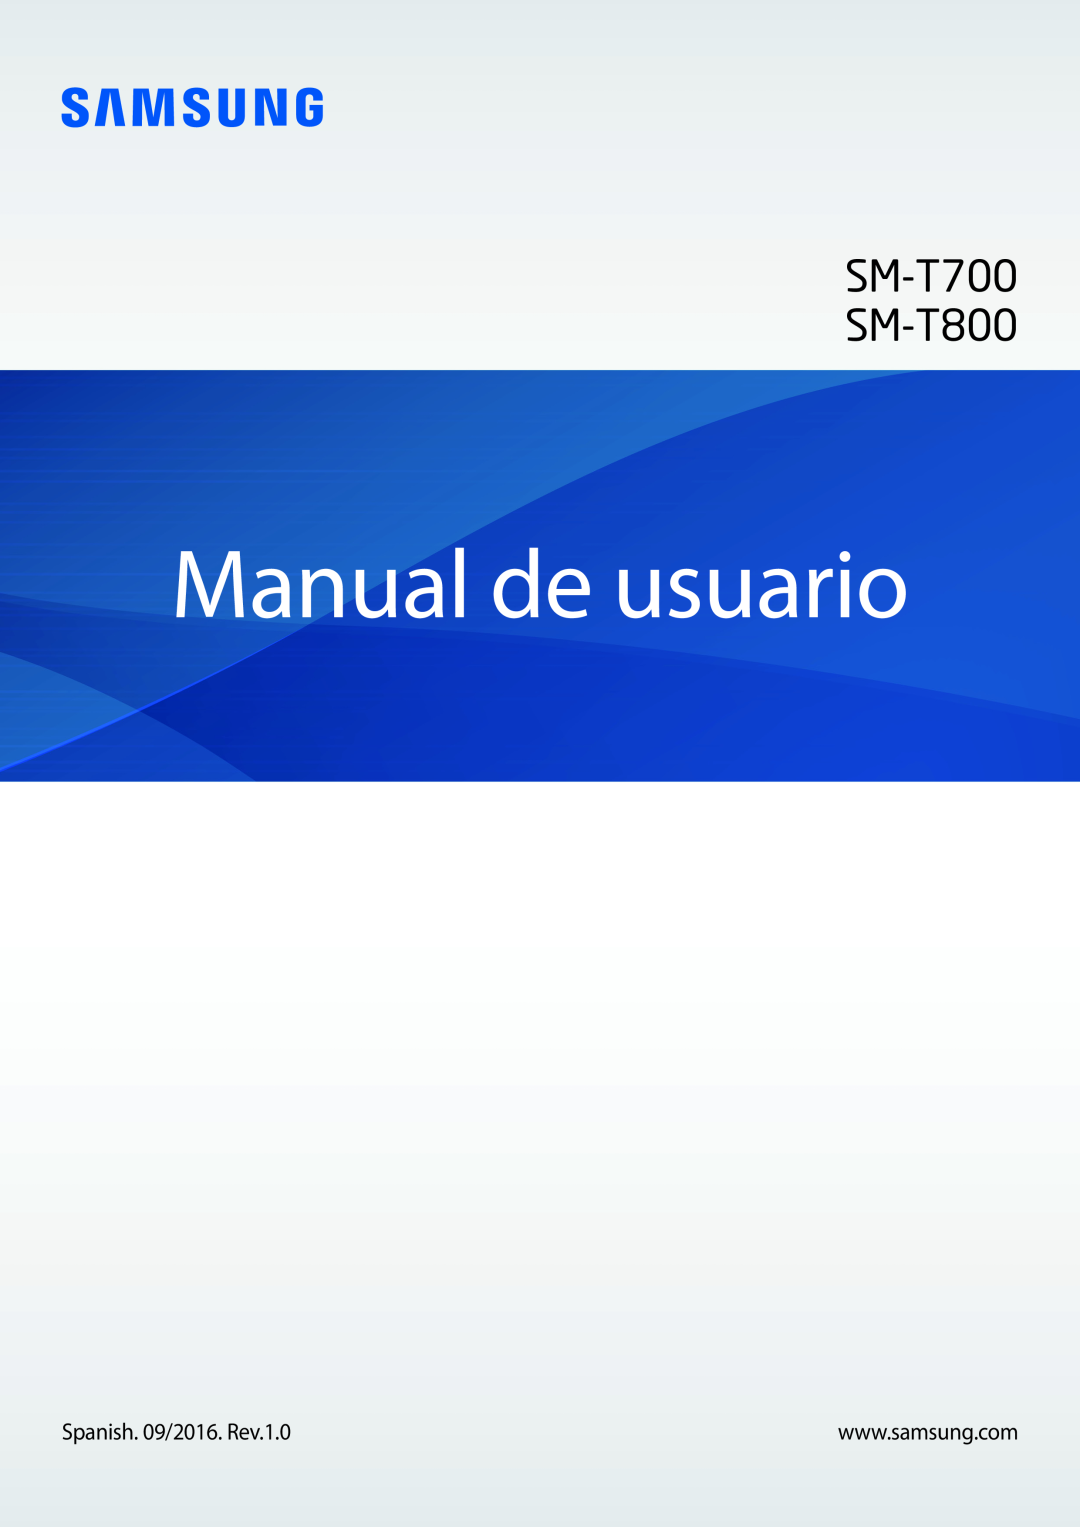 Samsung SM-T800NTSATPH, SM-T800NHAAATO, SM-T800NZWATPH, SM-T800NZWAXEO manual Manual de usuario, SM-T700 SM-T800 